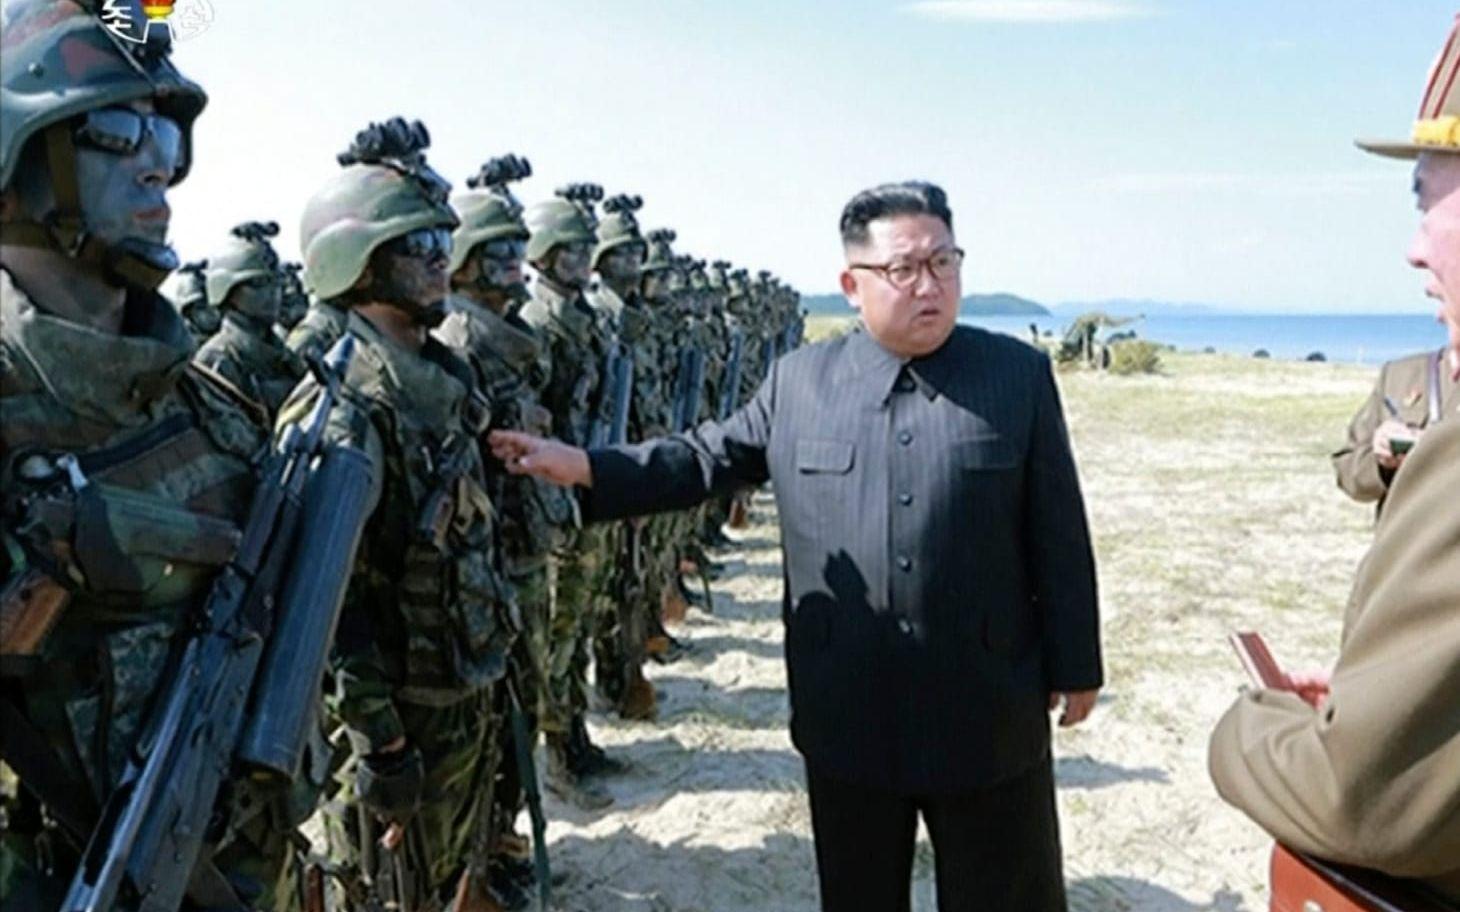 En bild från den nordkoreanska tv-kanalen KRT visar diktatorn Kim Jong-Un inspektera trupper. FOTO: KRT via AP
